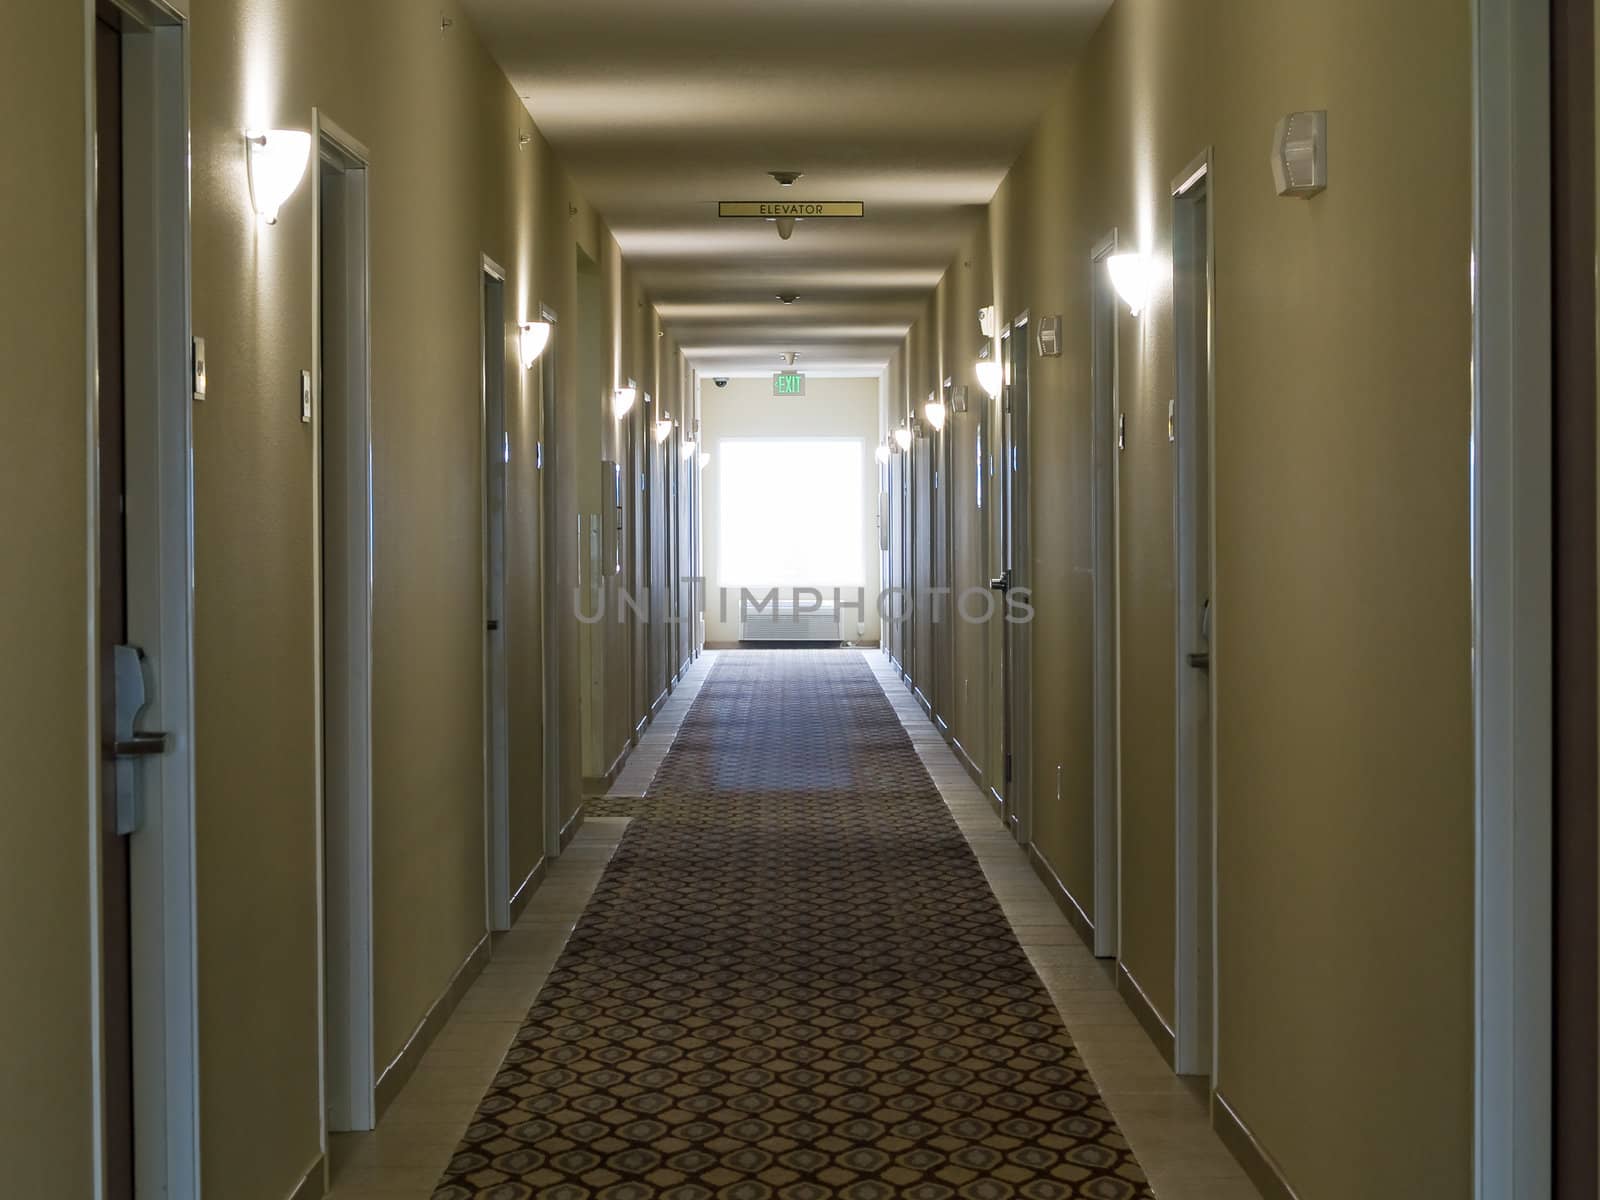 Empty hotel corridor in monochrome sepia color tone by Frankljunior